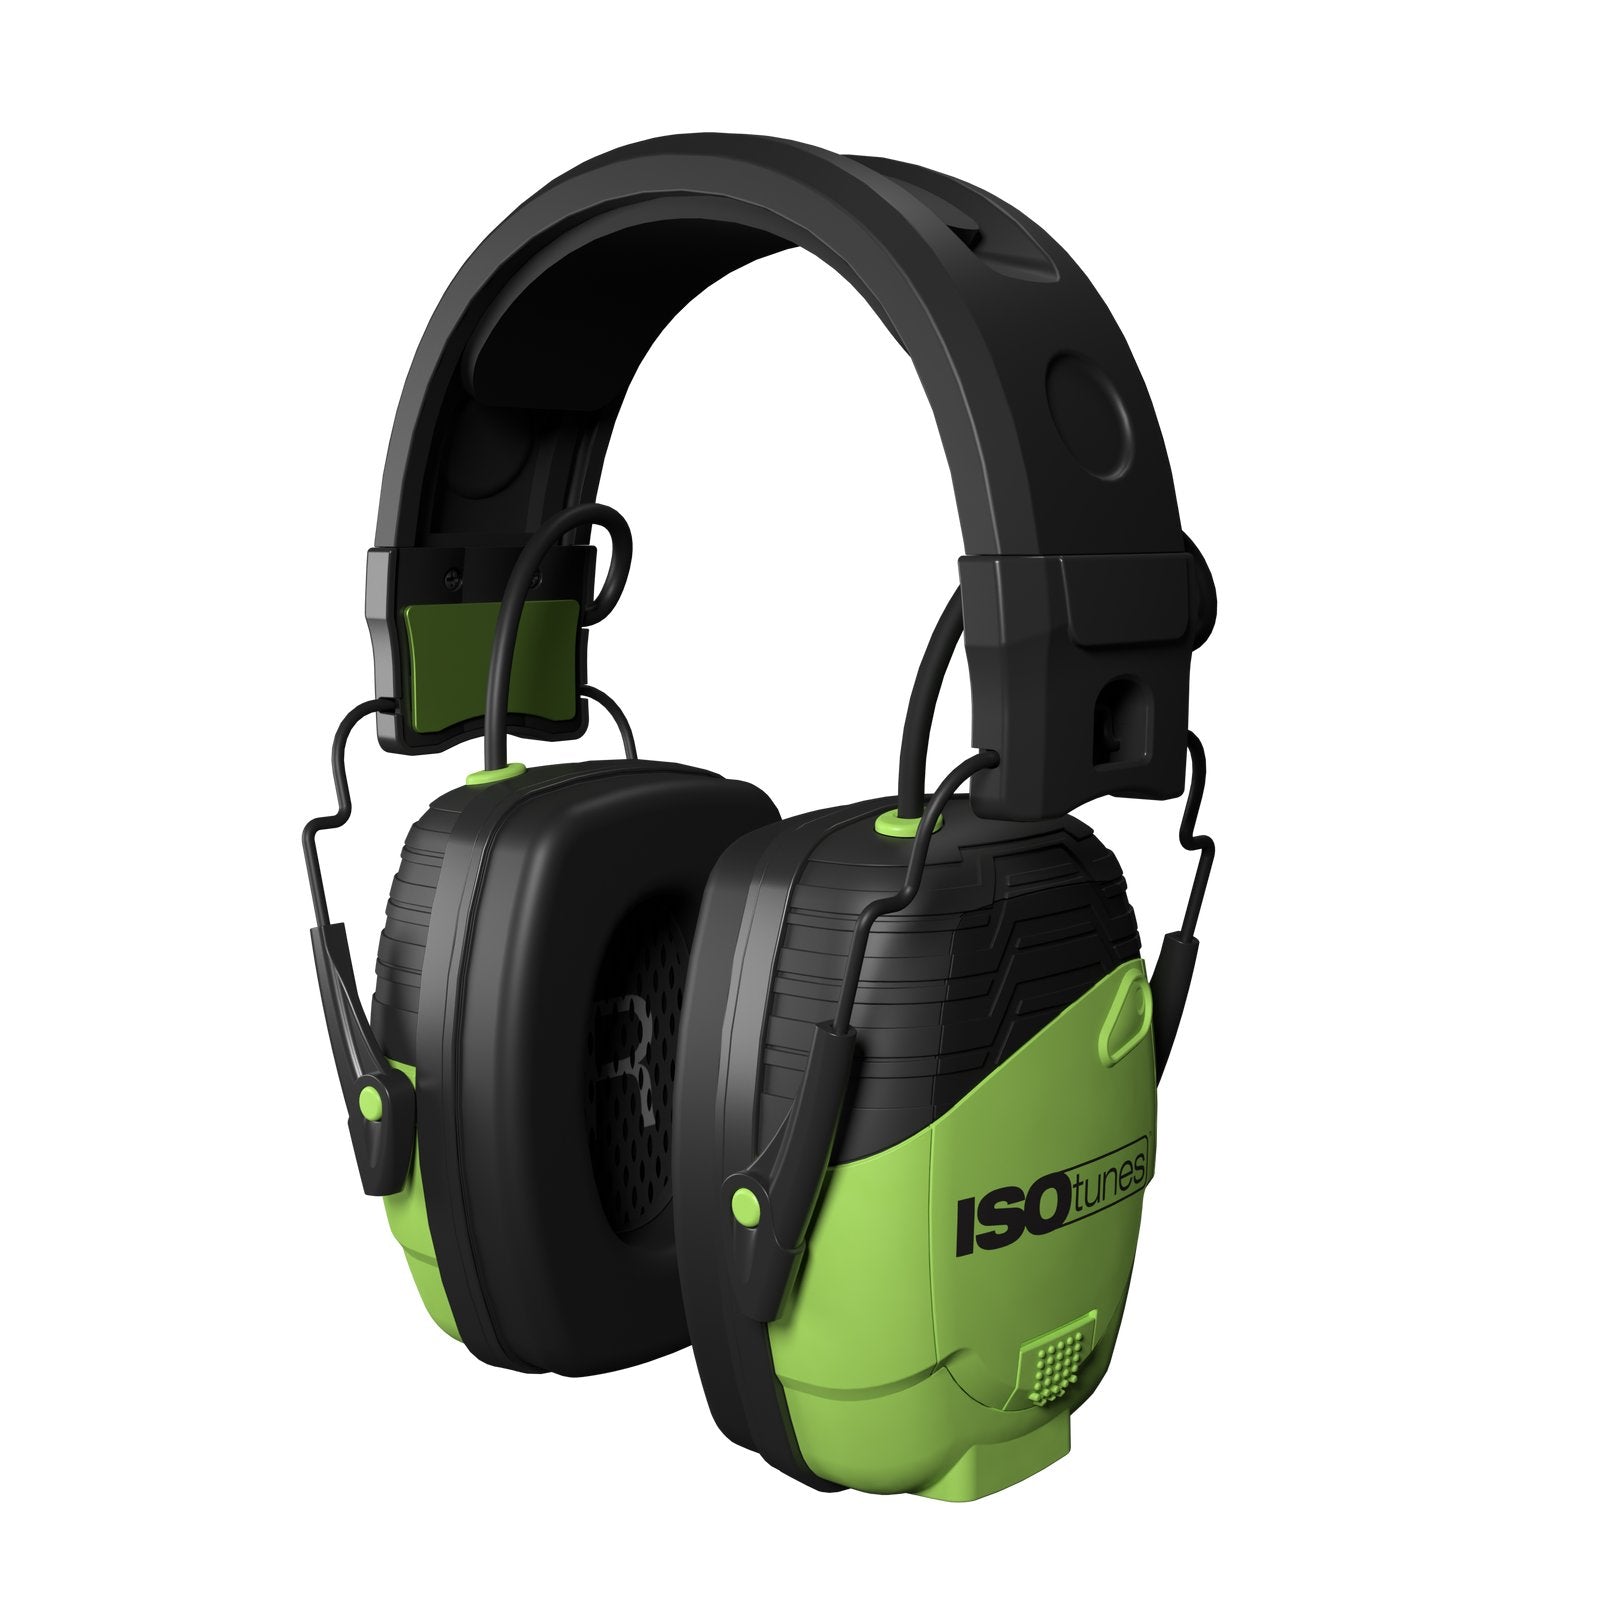 IsoTunes IT-34B - LINK Aware Bluetooth Ear Muffs Green